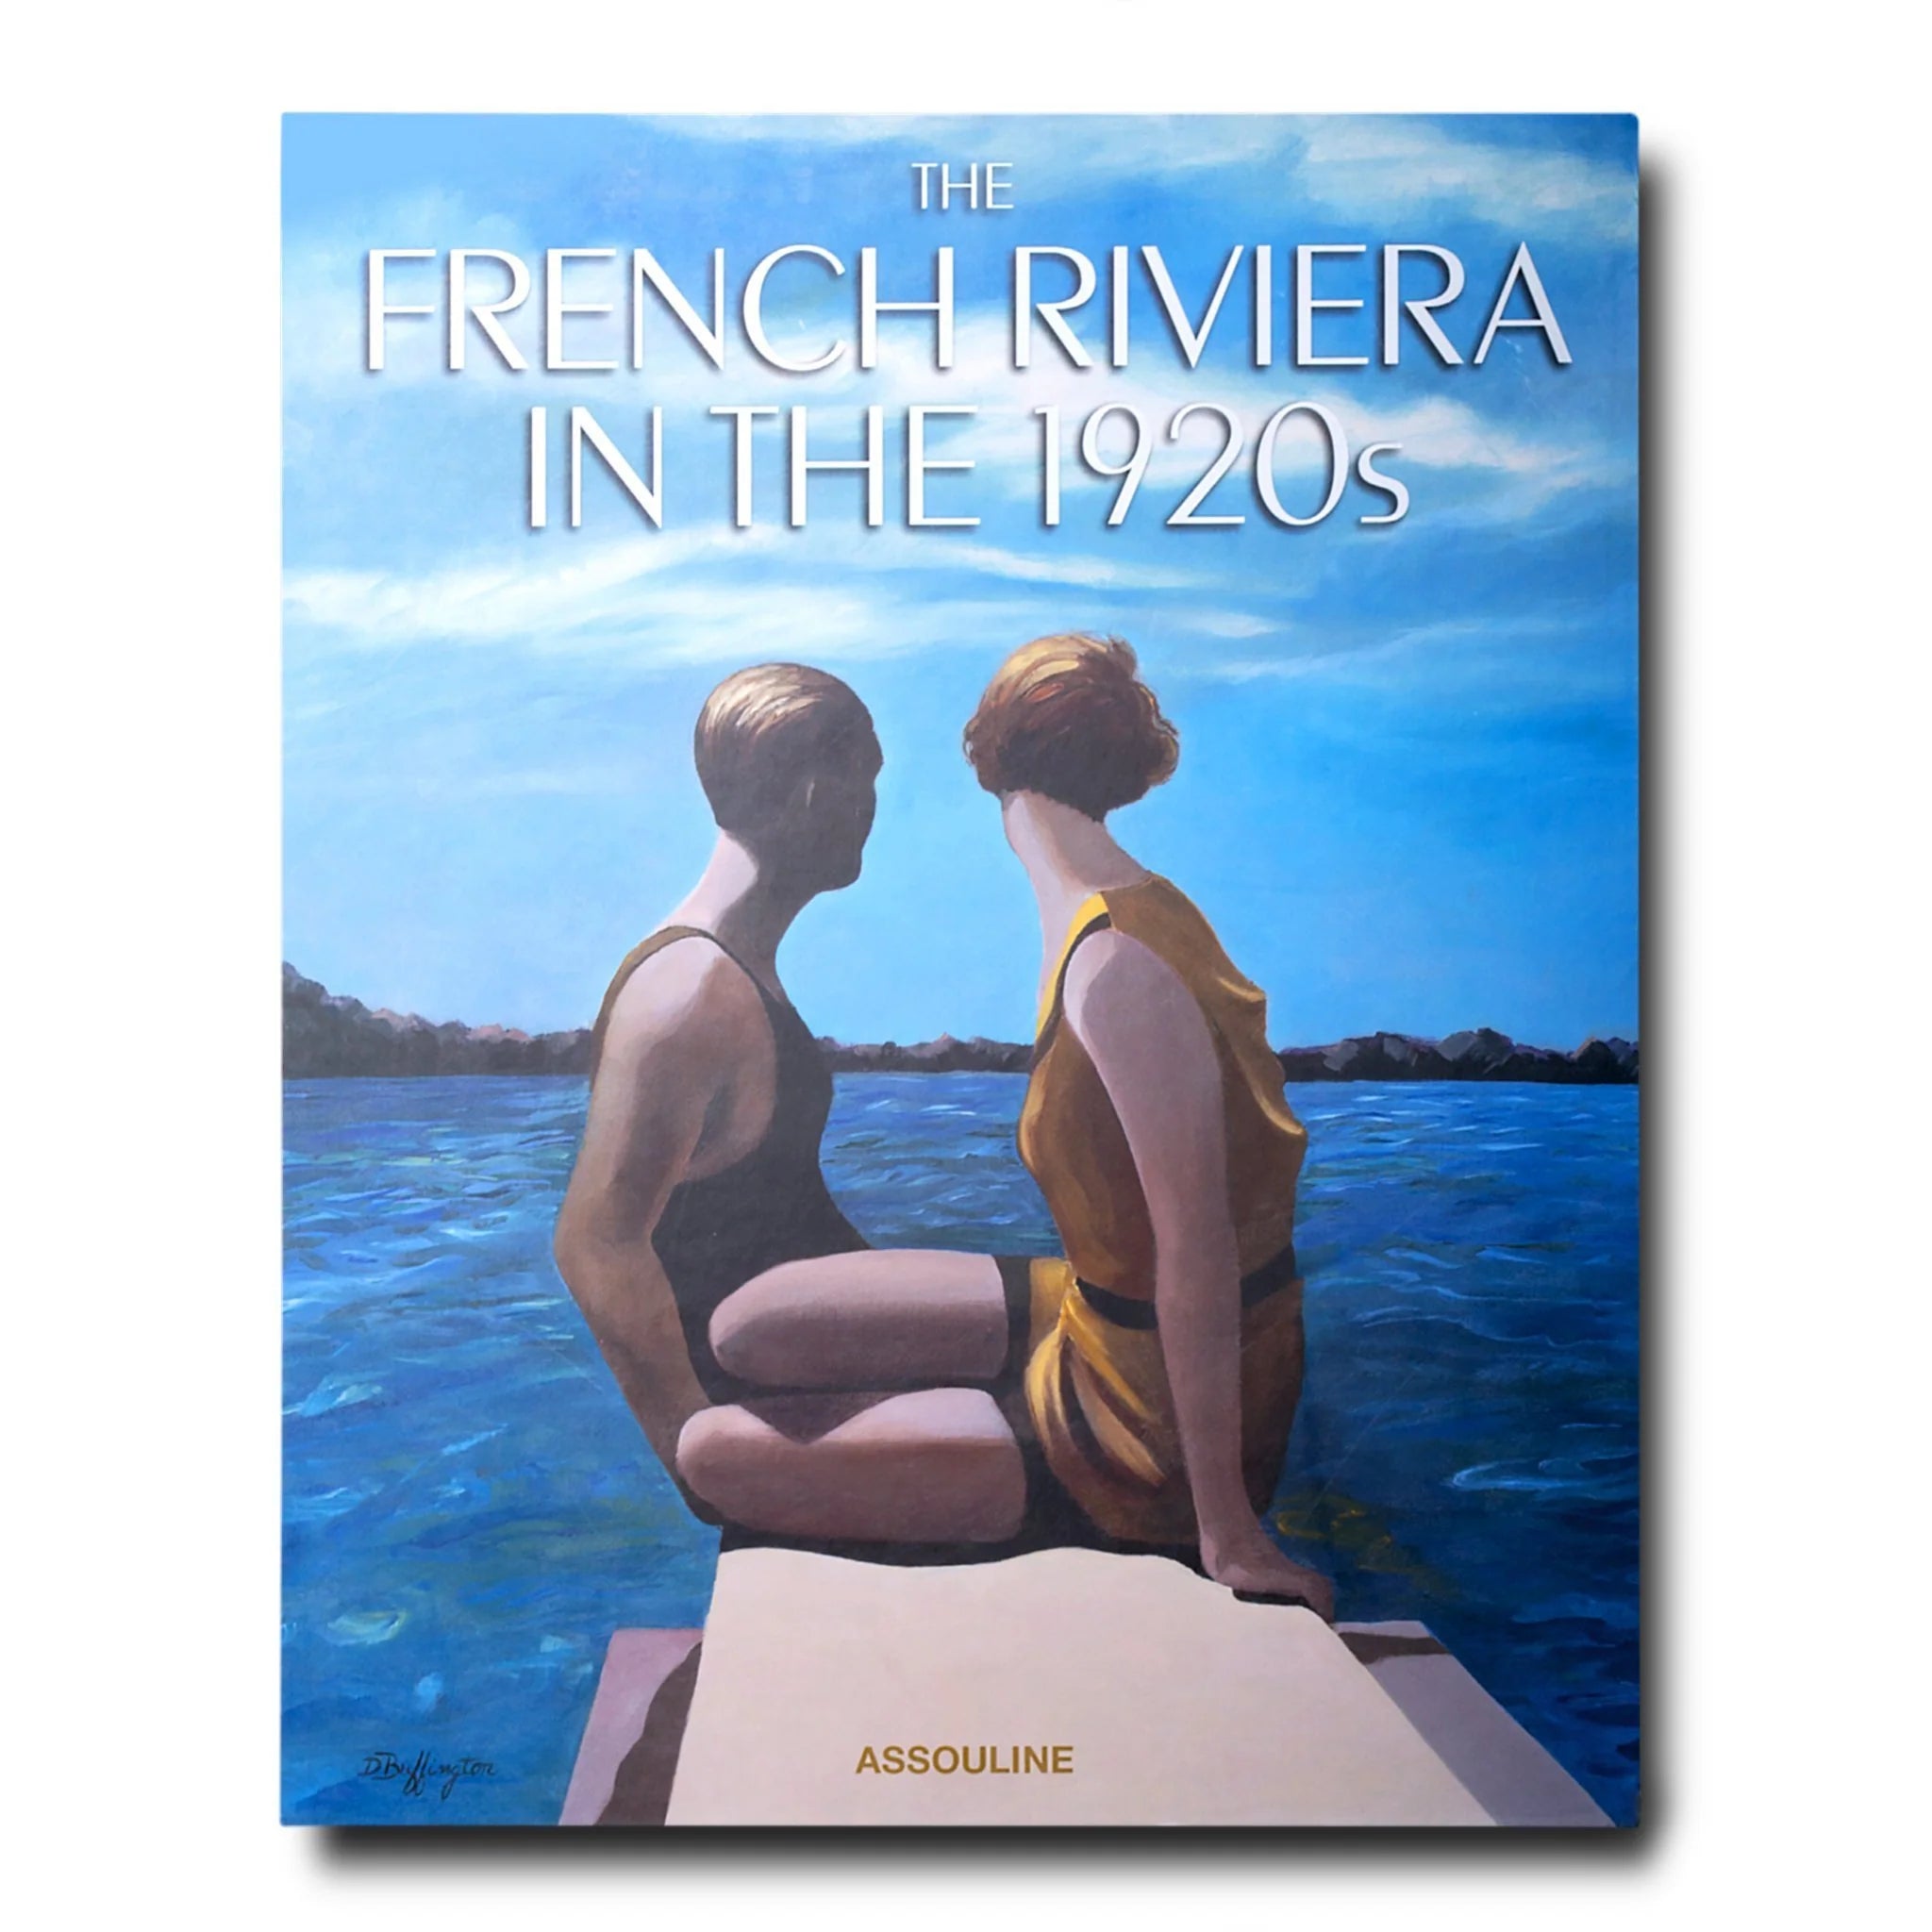 THE FRENCH RIVIERA IN THE 1920s, de la colección de libros decorativos de Assouline con temática de viajes